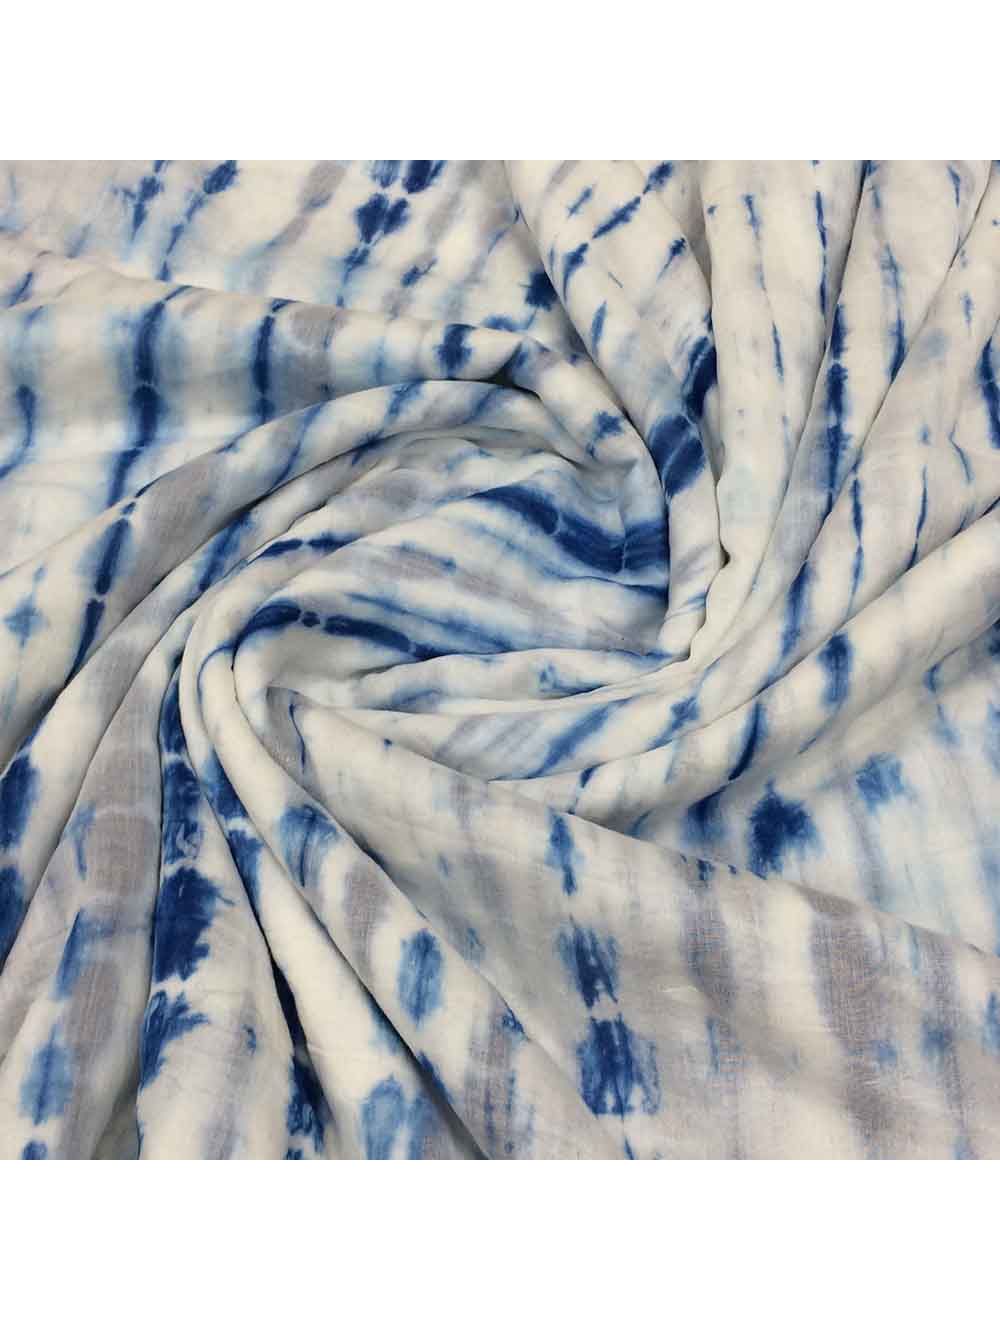 Shibori / Tie-Dye / Batik